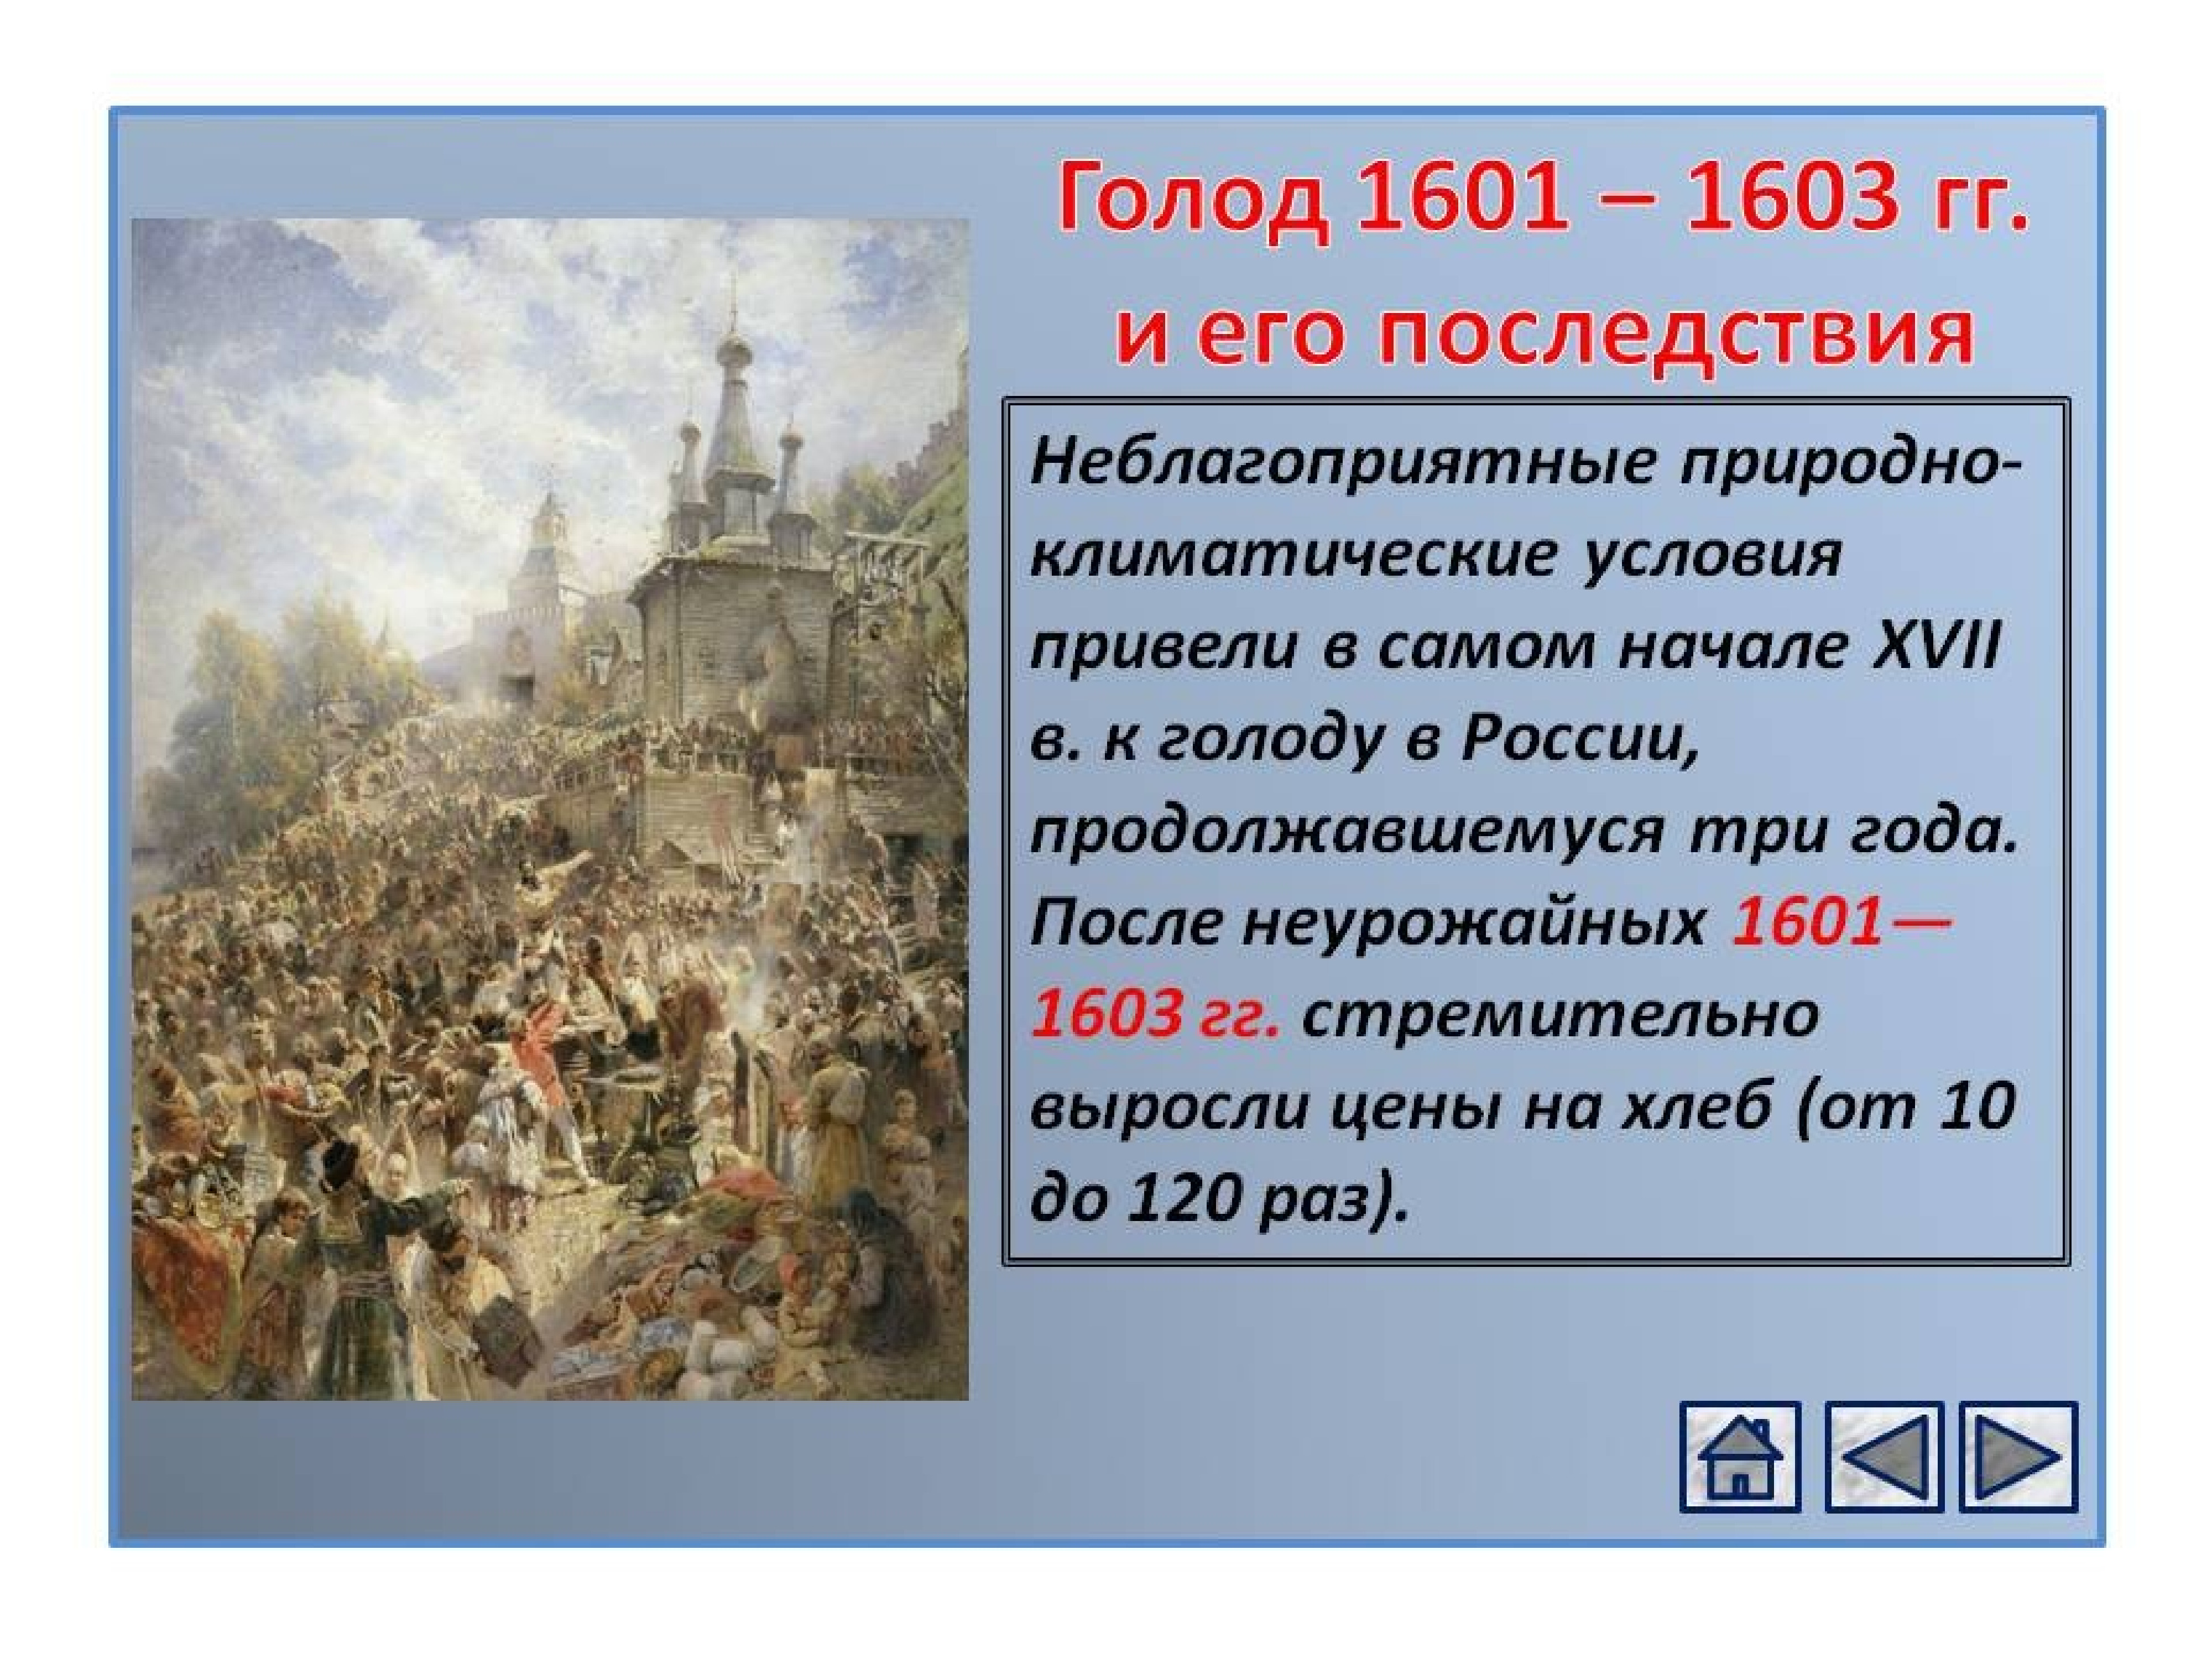 1603 год голод. Великий голод 1601-1603 в России. Великий голод (1601-1603). Смута в России с 1601-1603.